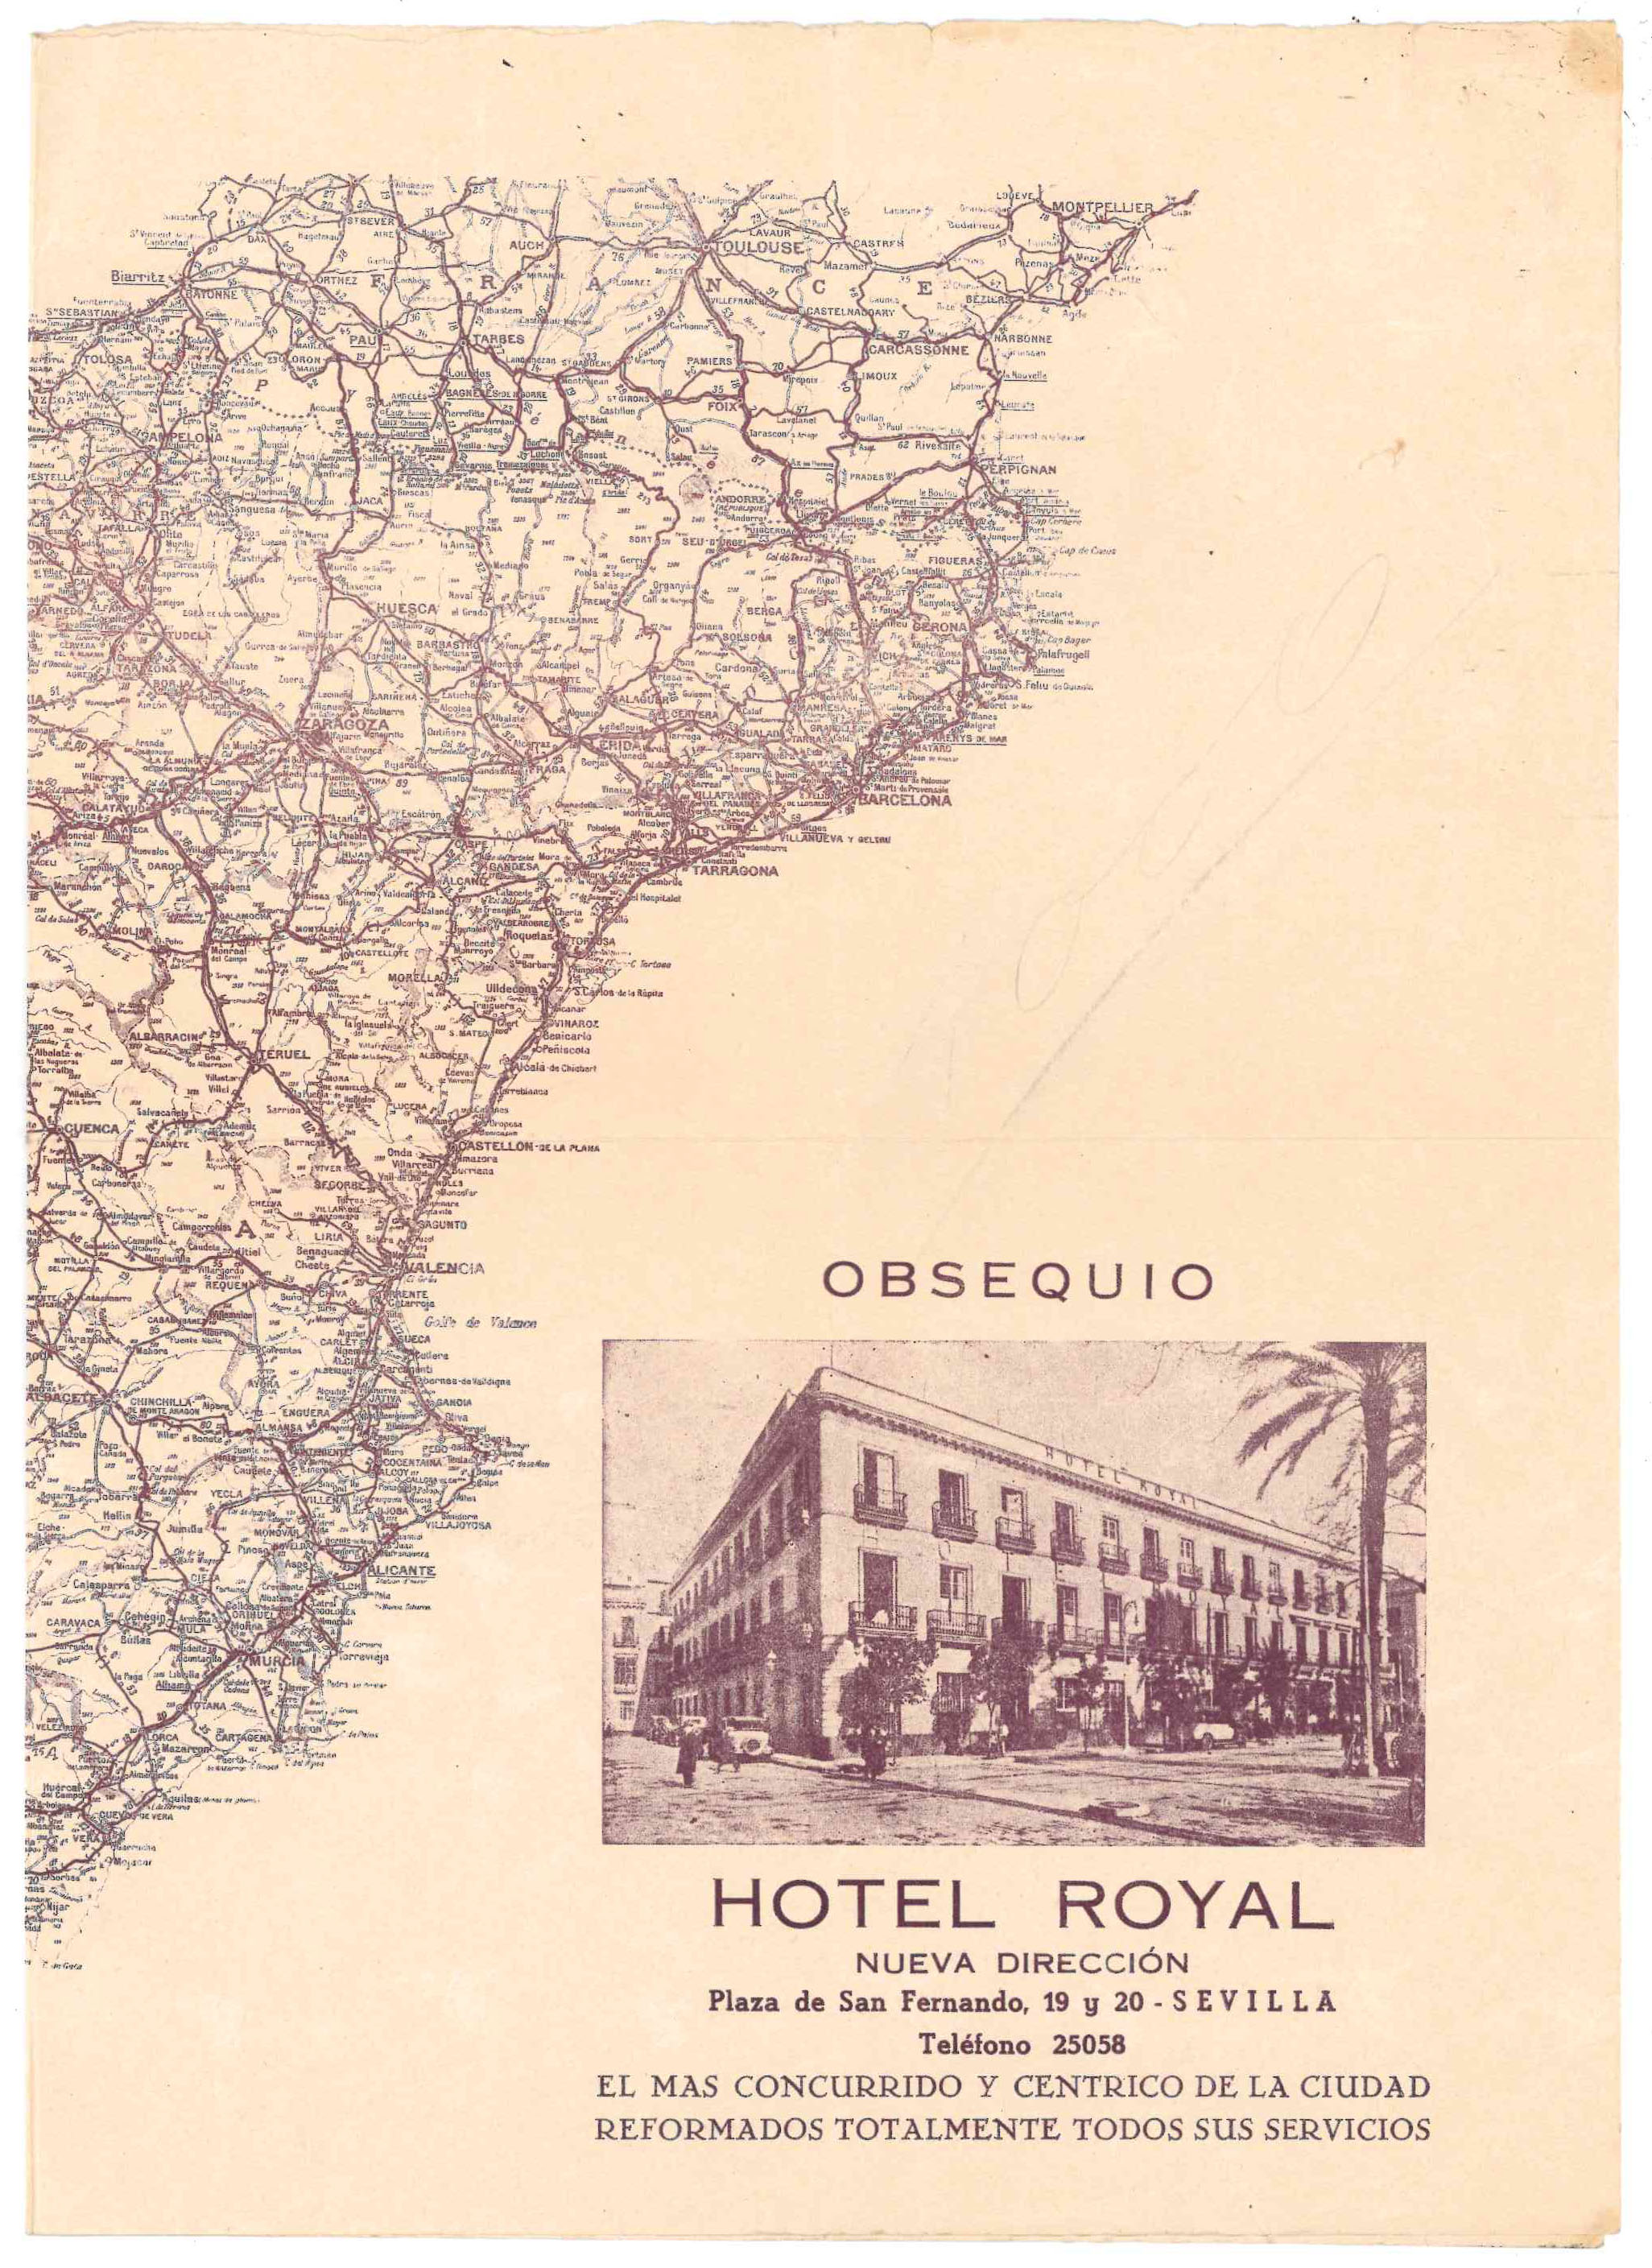 Mapa de España (50x35) Obsequio del Hotel Royal, Sevilla 1930?